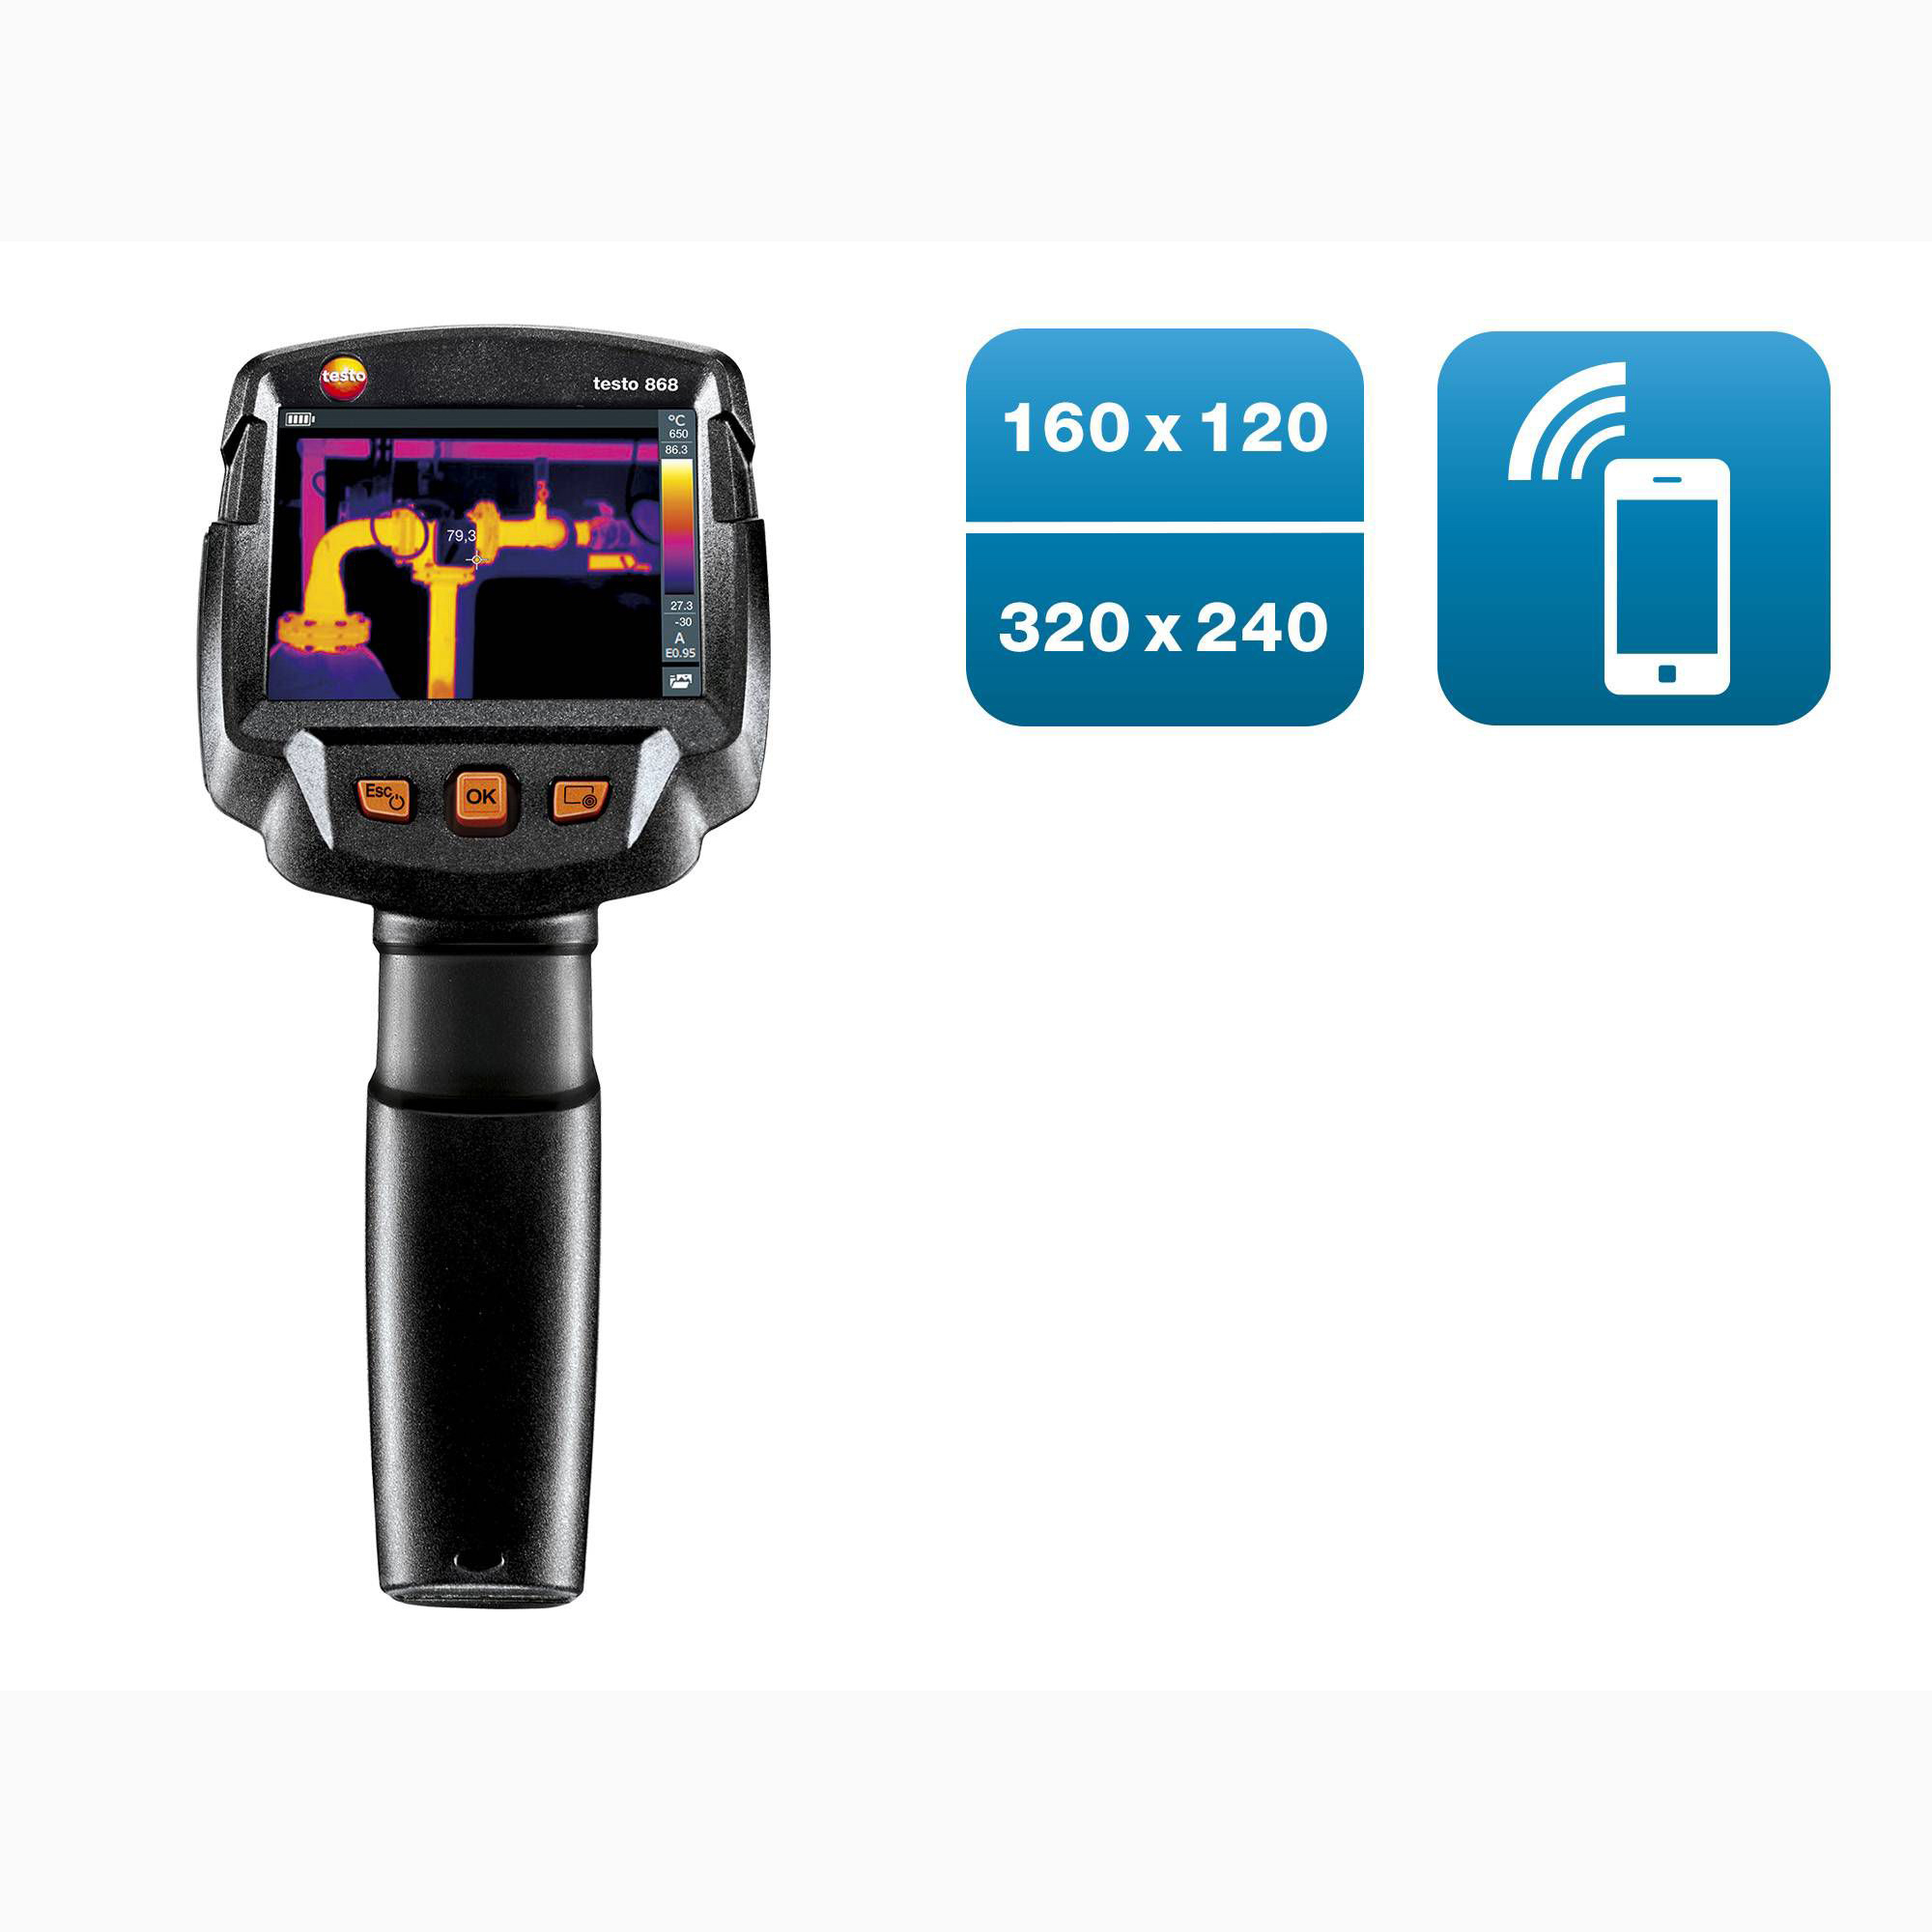 德国德图testo 868 - 入门级智能无线热像仪（160x120像素，App）